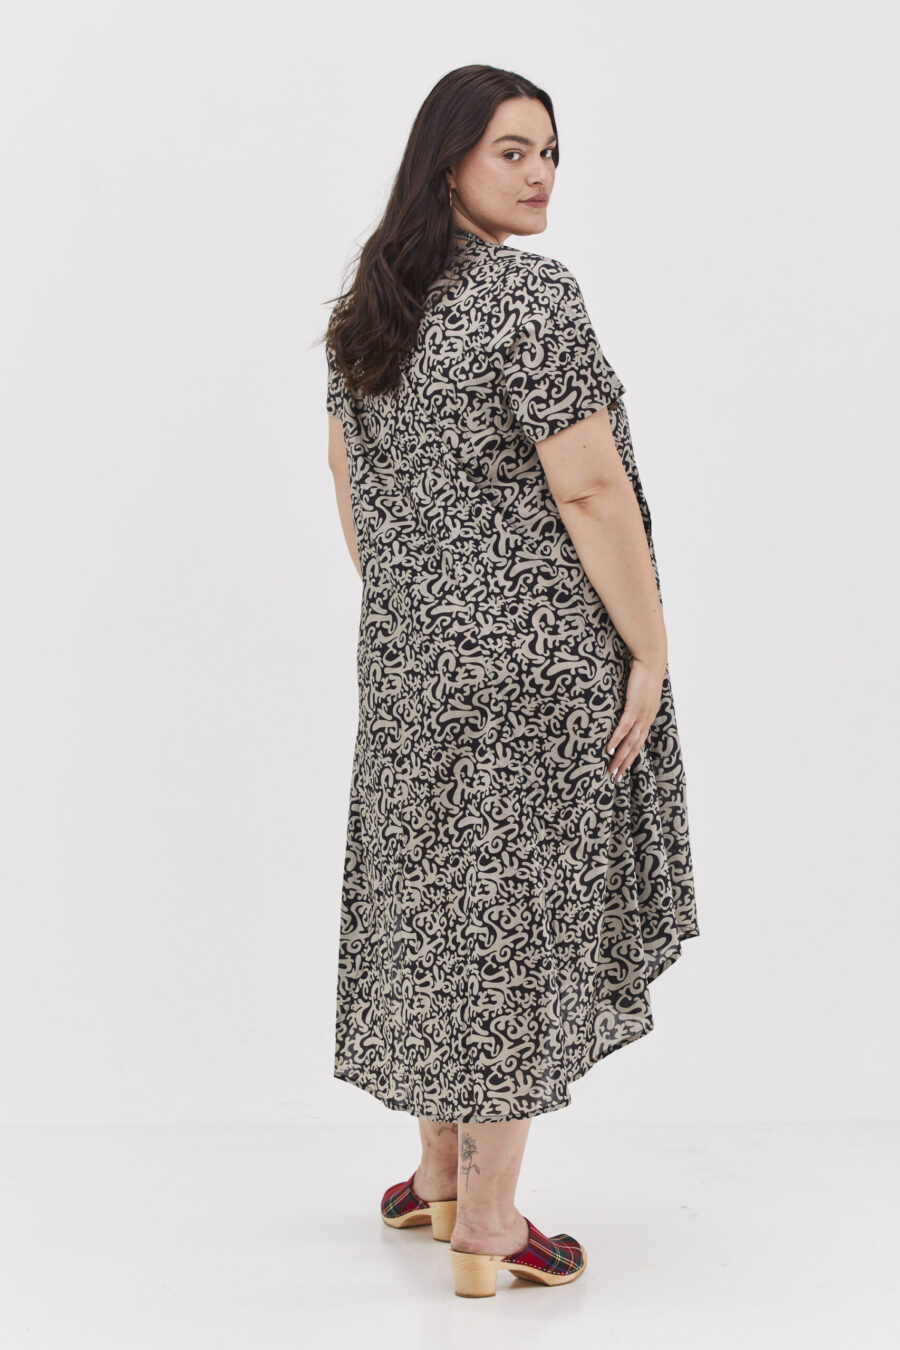 שמלת יפעת | שמלת אוברסייז בעיצוב ייחודי – פרינט בלאק פנטזי, שמלה שחורה עם הדפס מופשט בצבע אפור בהיר. של קומפורט זון בוטיק